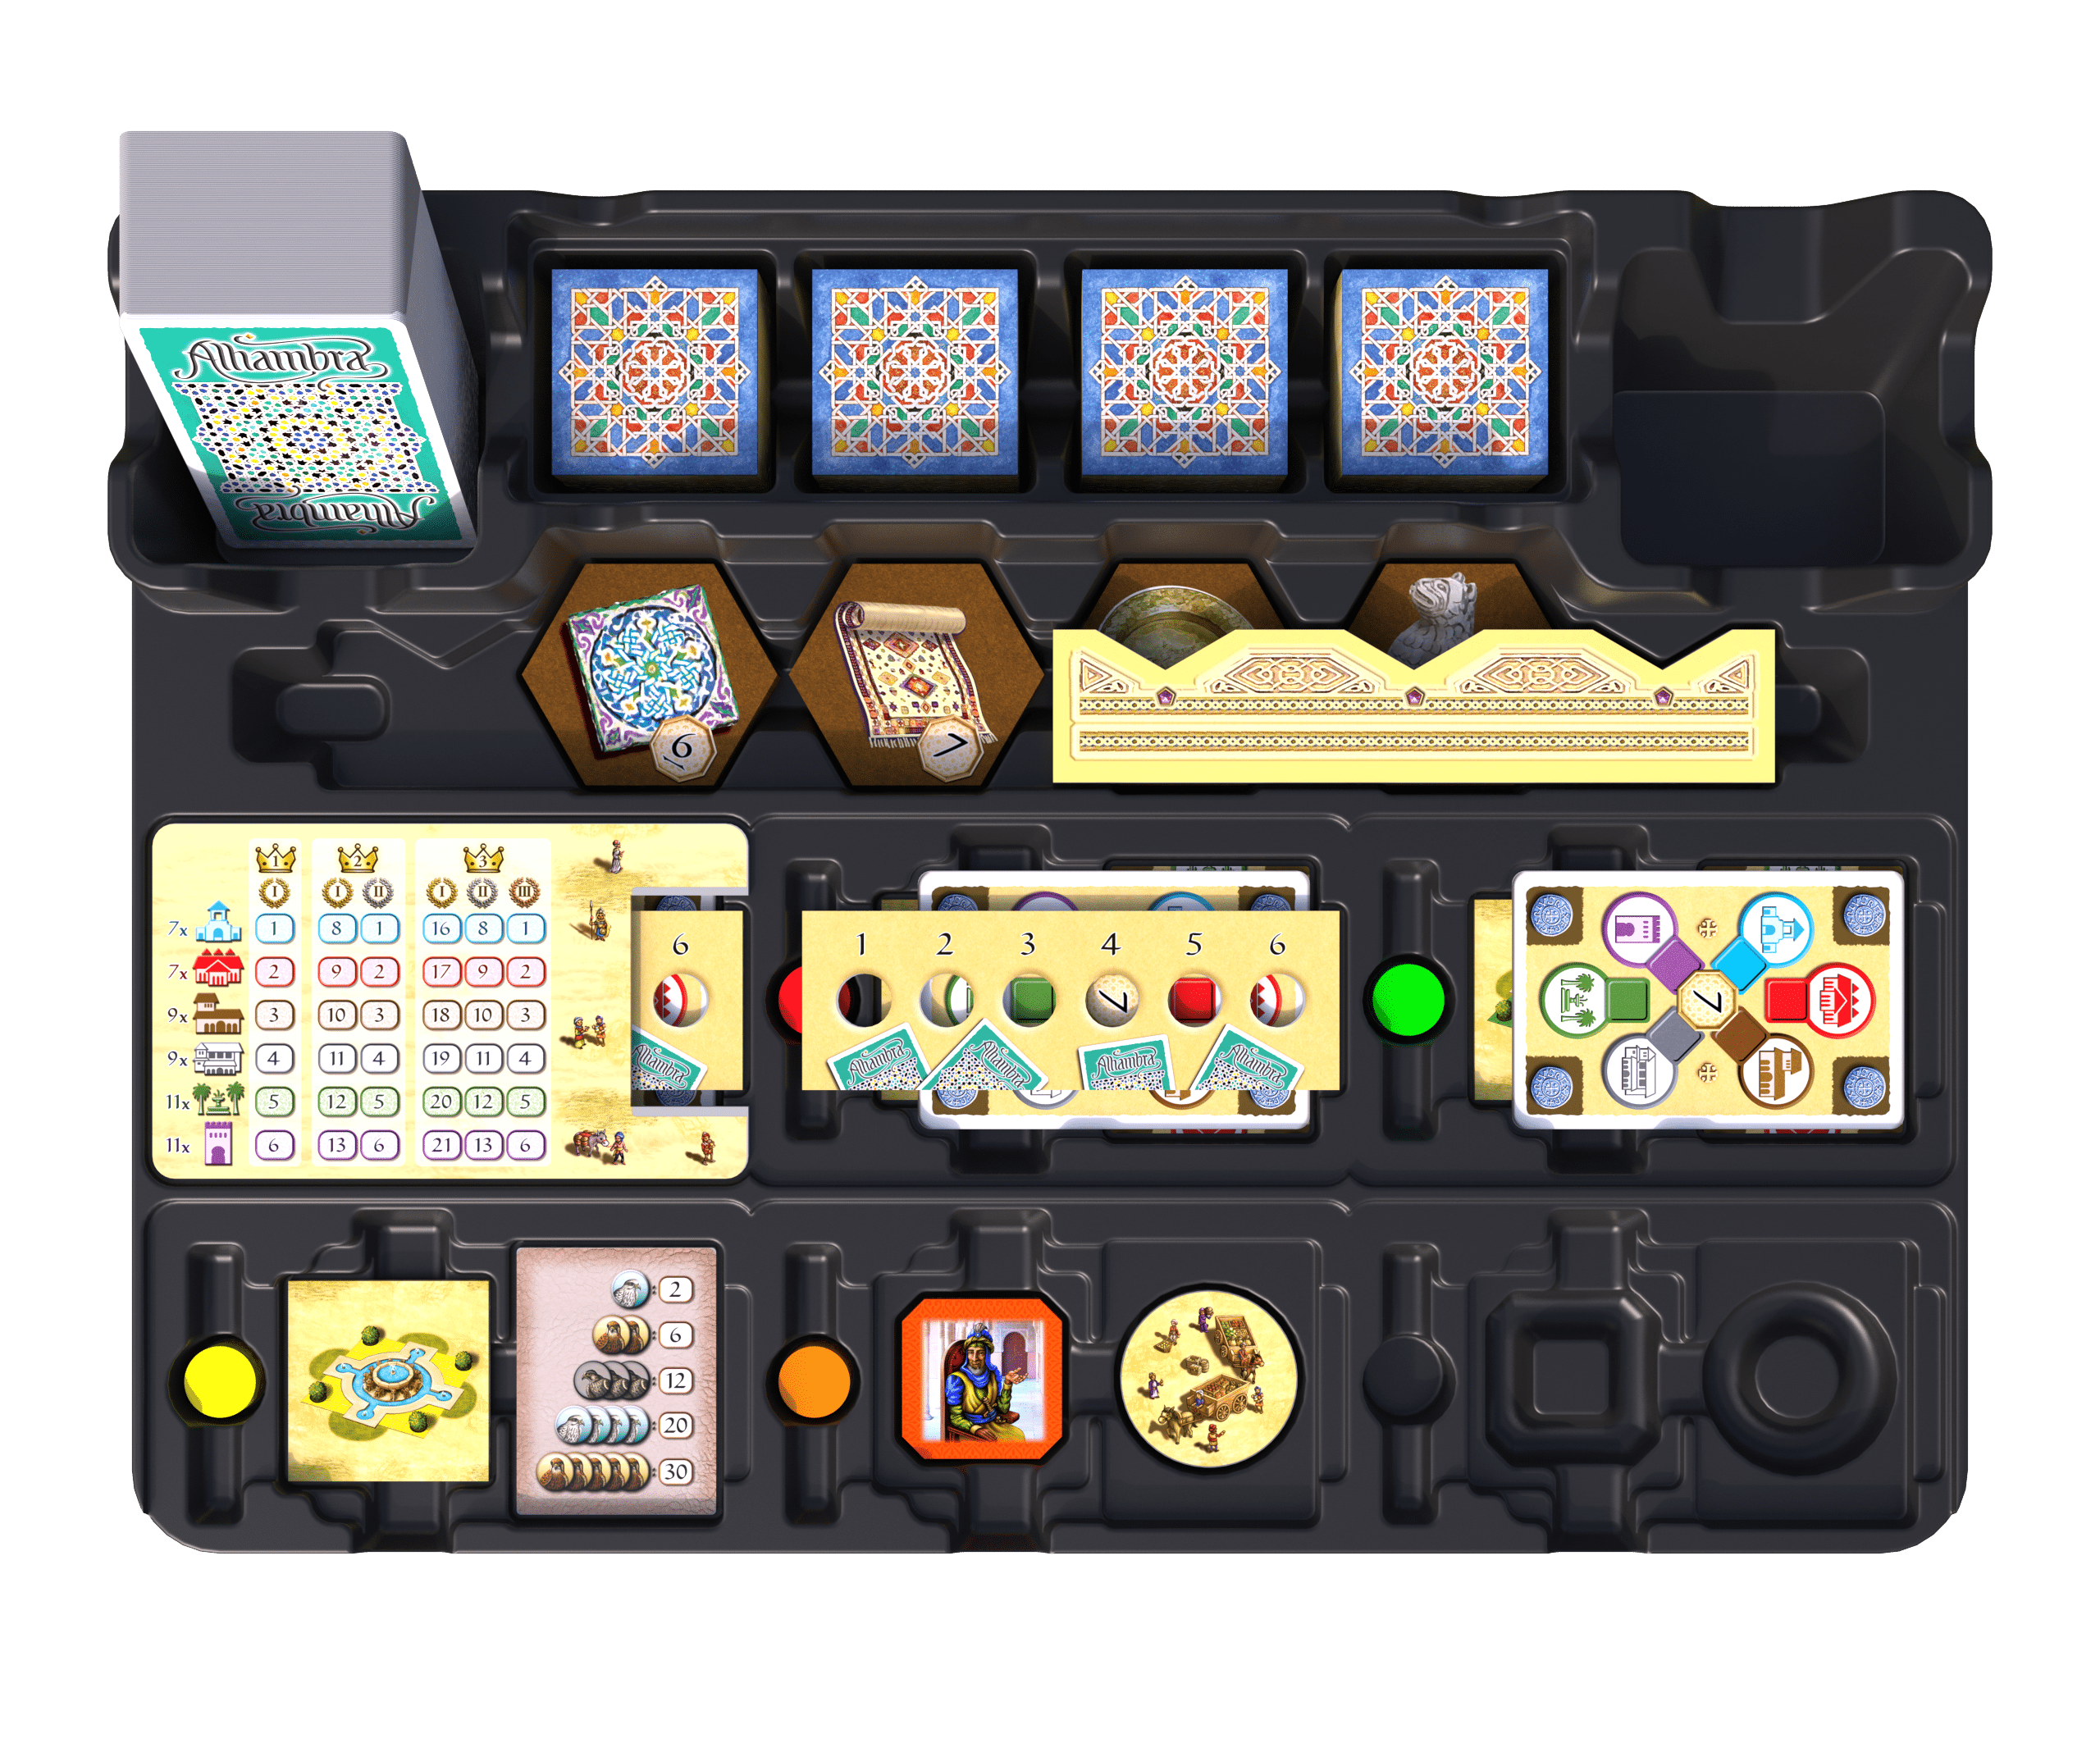 Alhambra board game insert organizer